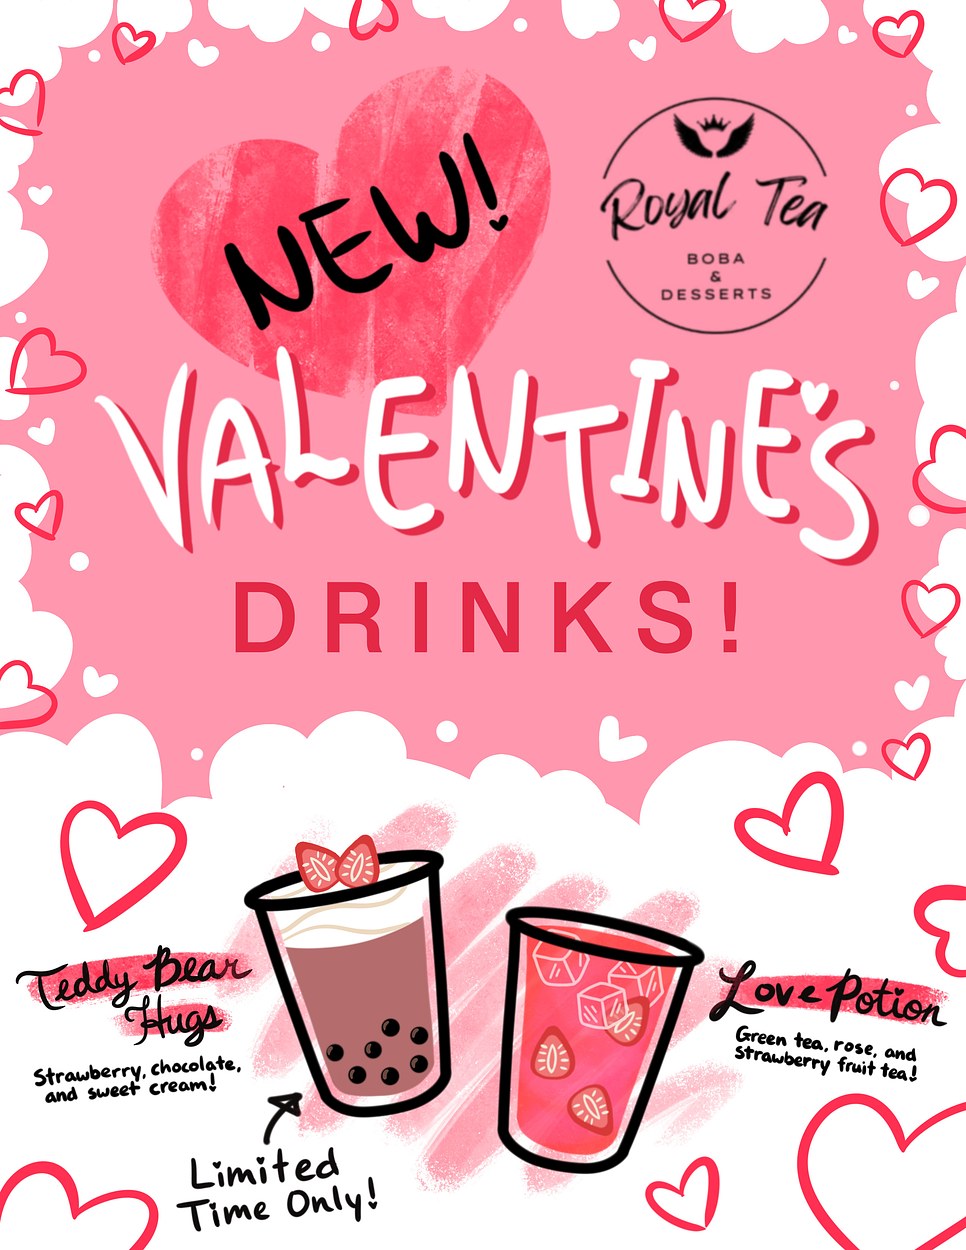 Valentine's Flyer for Royal Tea Cafe